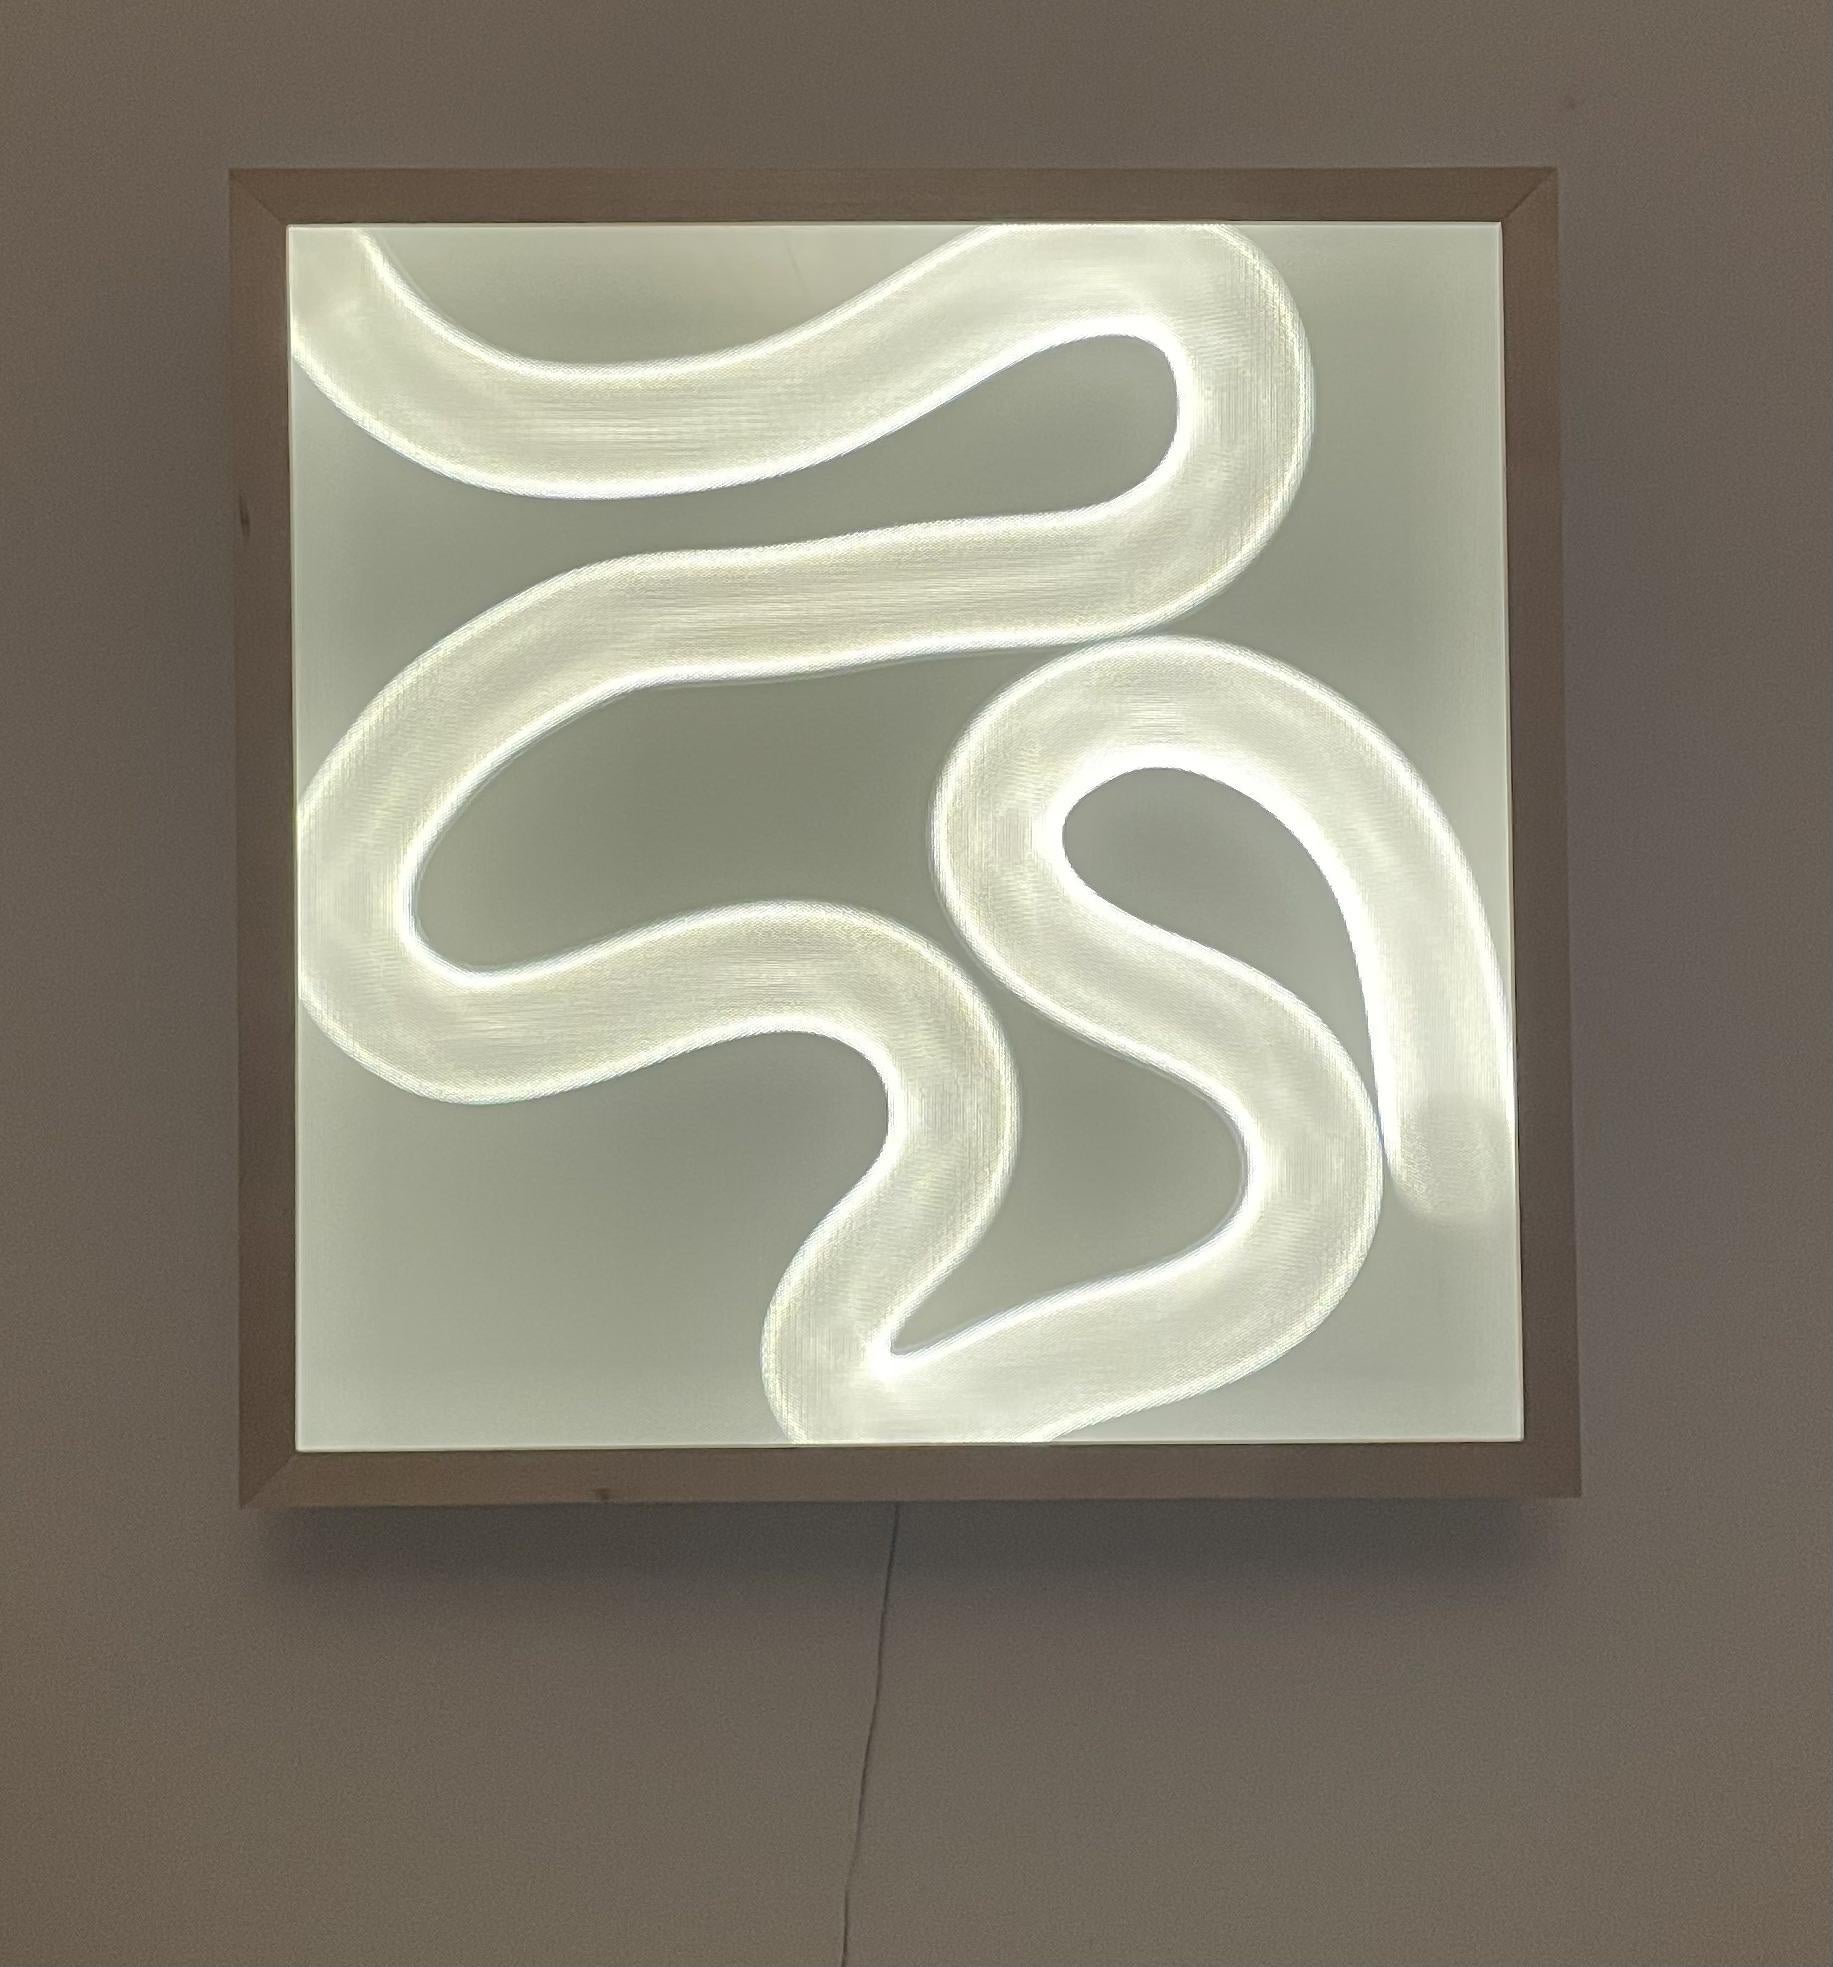 Sculpture lumineuse Aramse du Studio Lampent
Edition limitée à 5 exemplaires
Dimensions : L 70 x P 13 x H 70 cm
Matériaux : Feuilles d'acrylique, lumières LED à gradation, bois.

Toutes nos lampes peuvent être câblées en fonction de chaque pays. Si